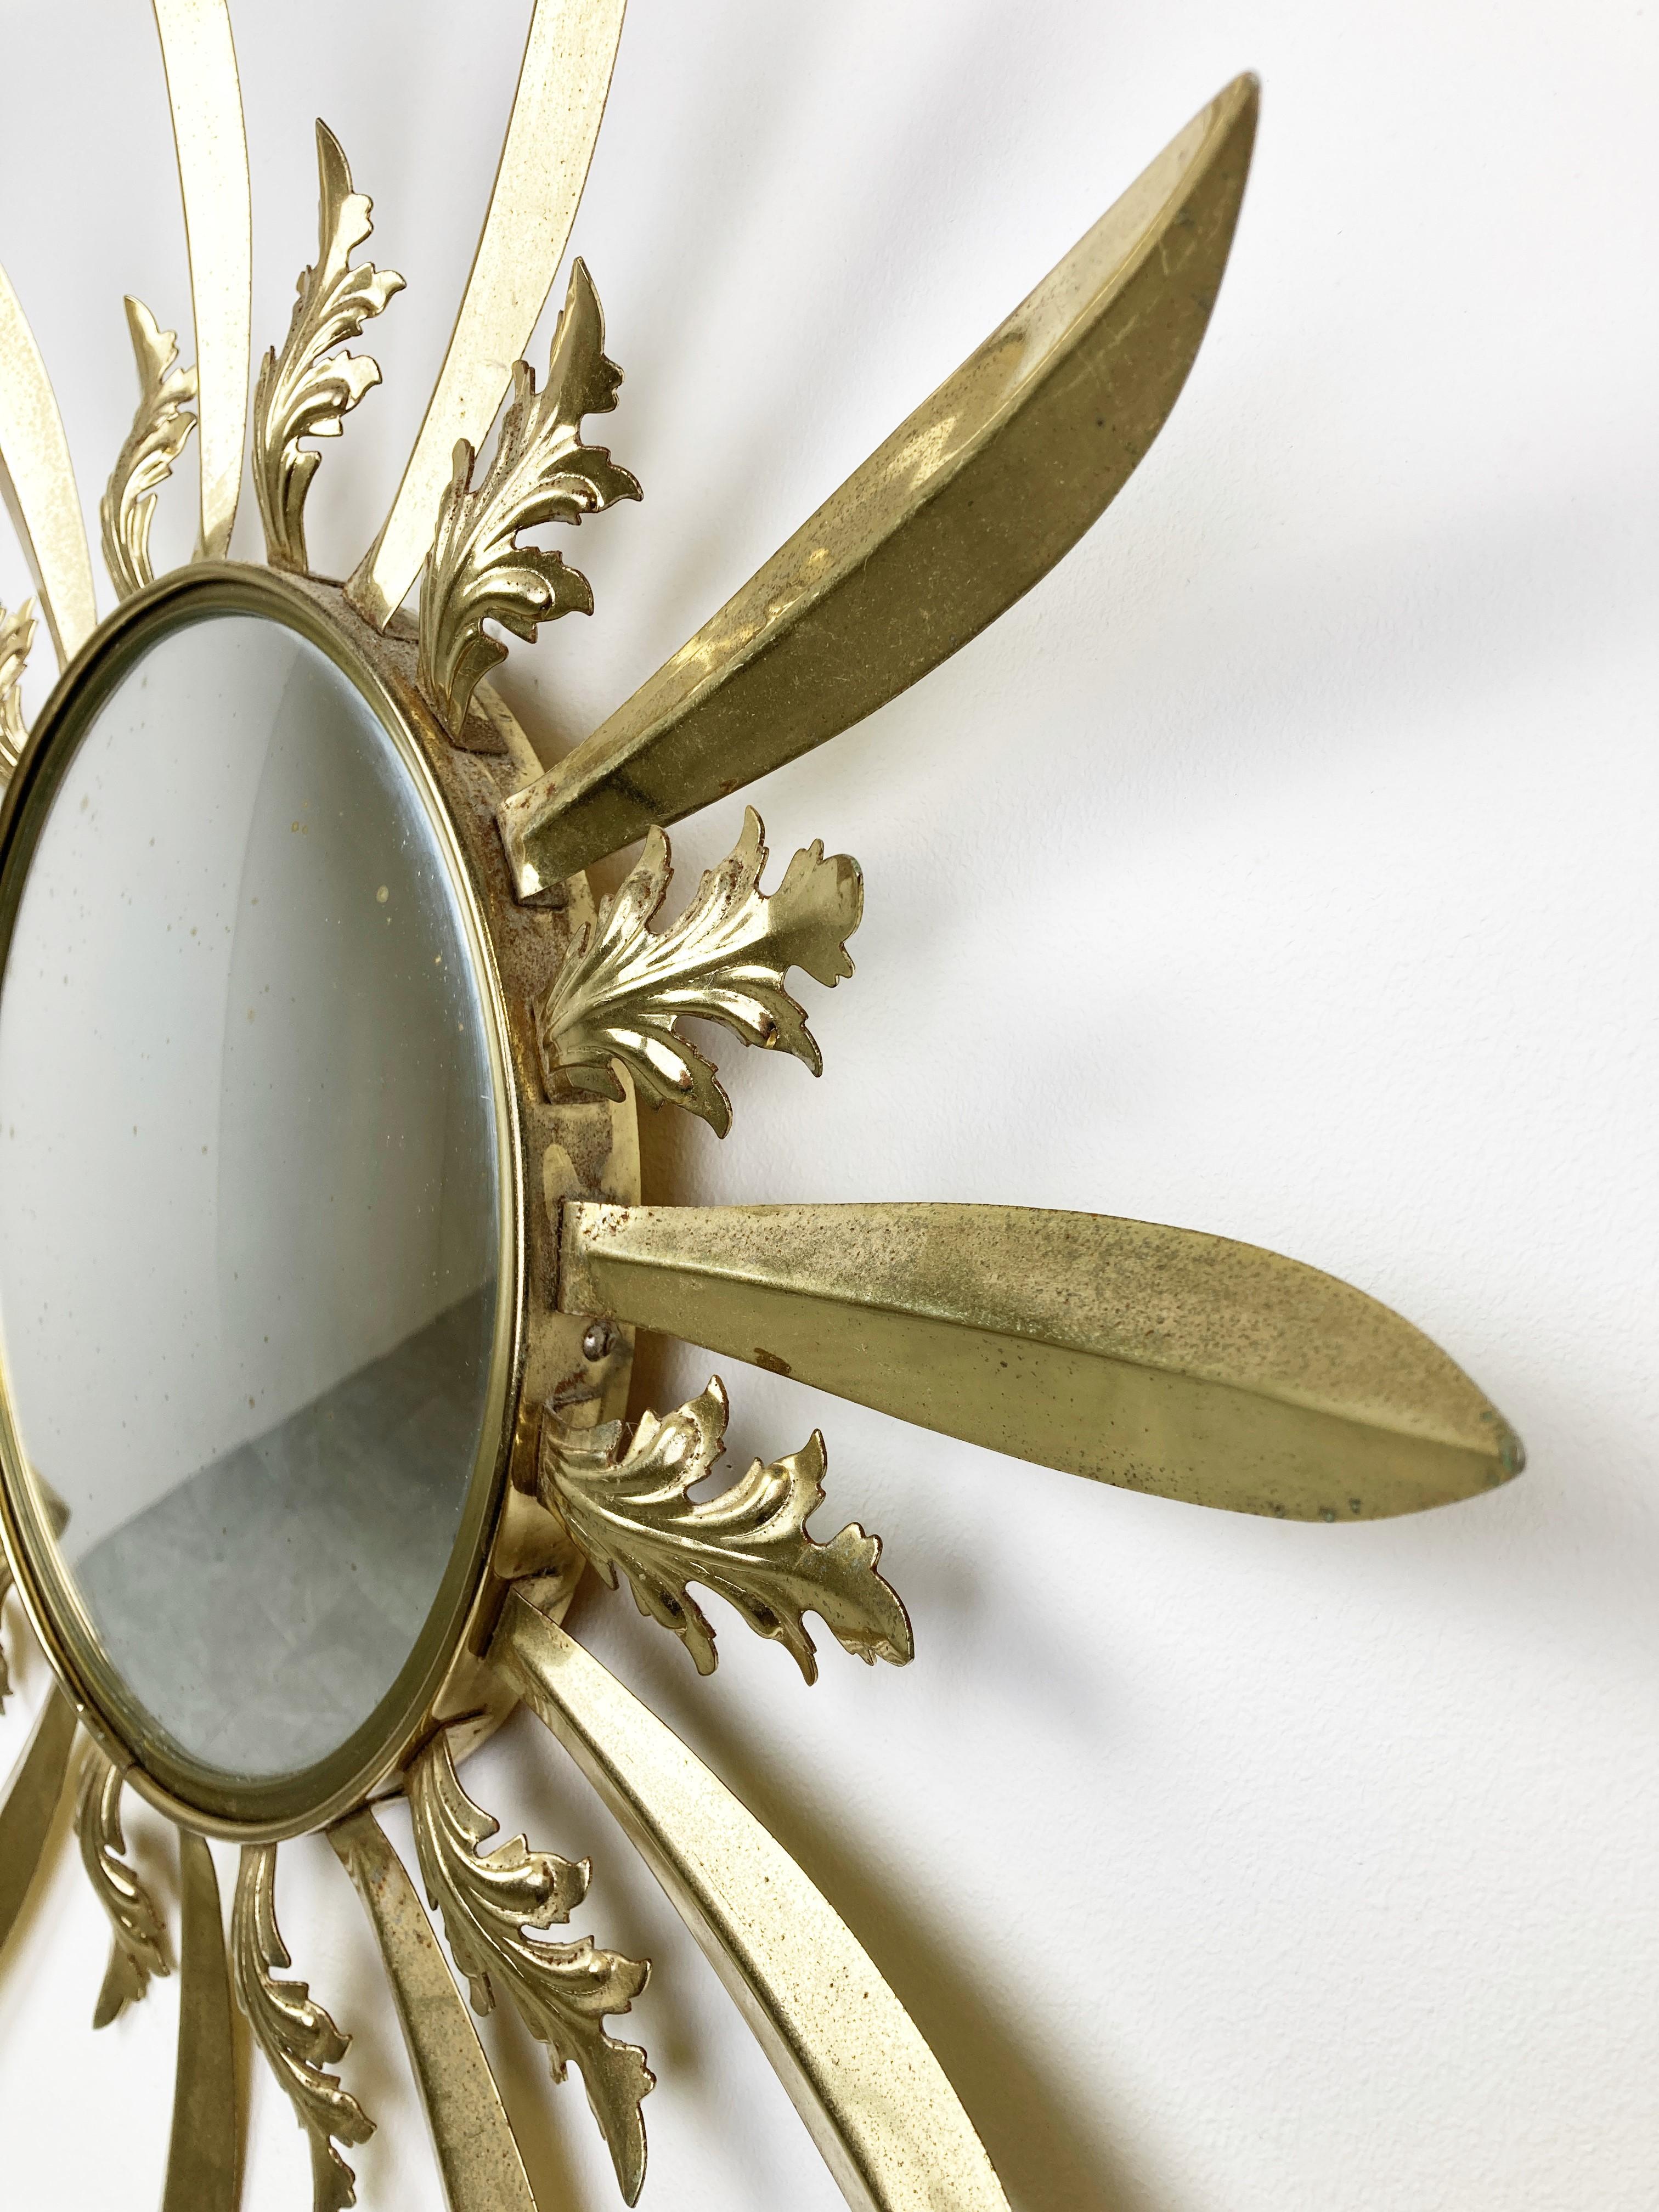 Sonnenschliff- oder Blumenspiegel aus der Mitte des Jahrhunderts aus Messing mit konvexem Glas.

Dieser Spiegel passt in die meisten Innenräume und ist eine perfekte Ergänzung für eine Einrichtung im Regency-Stil.

Der Spiegel ist aus Messing